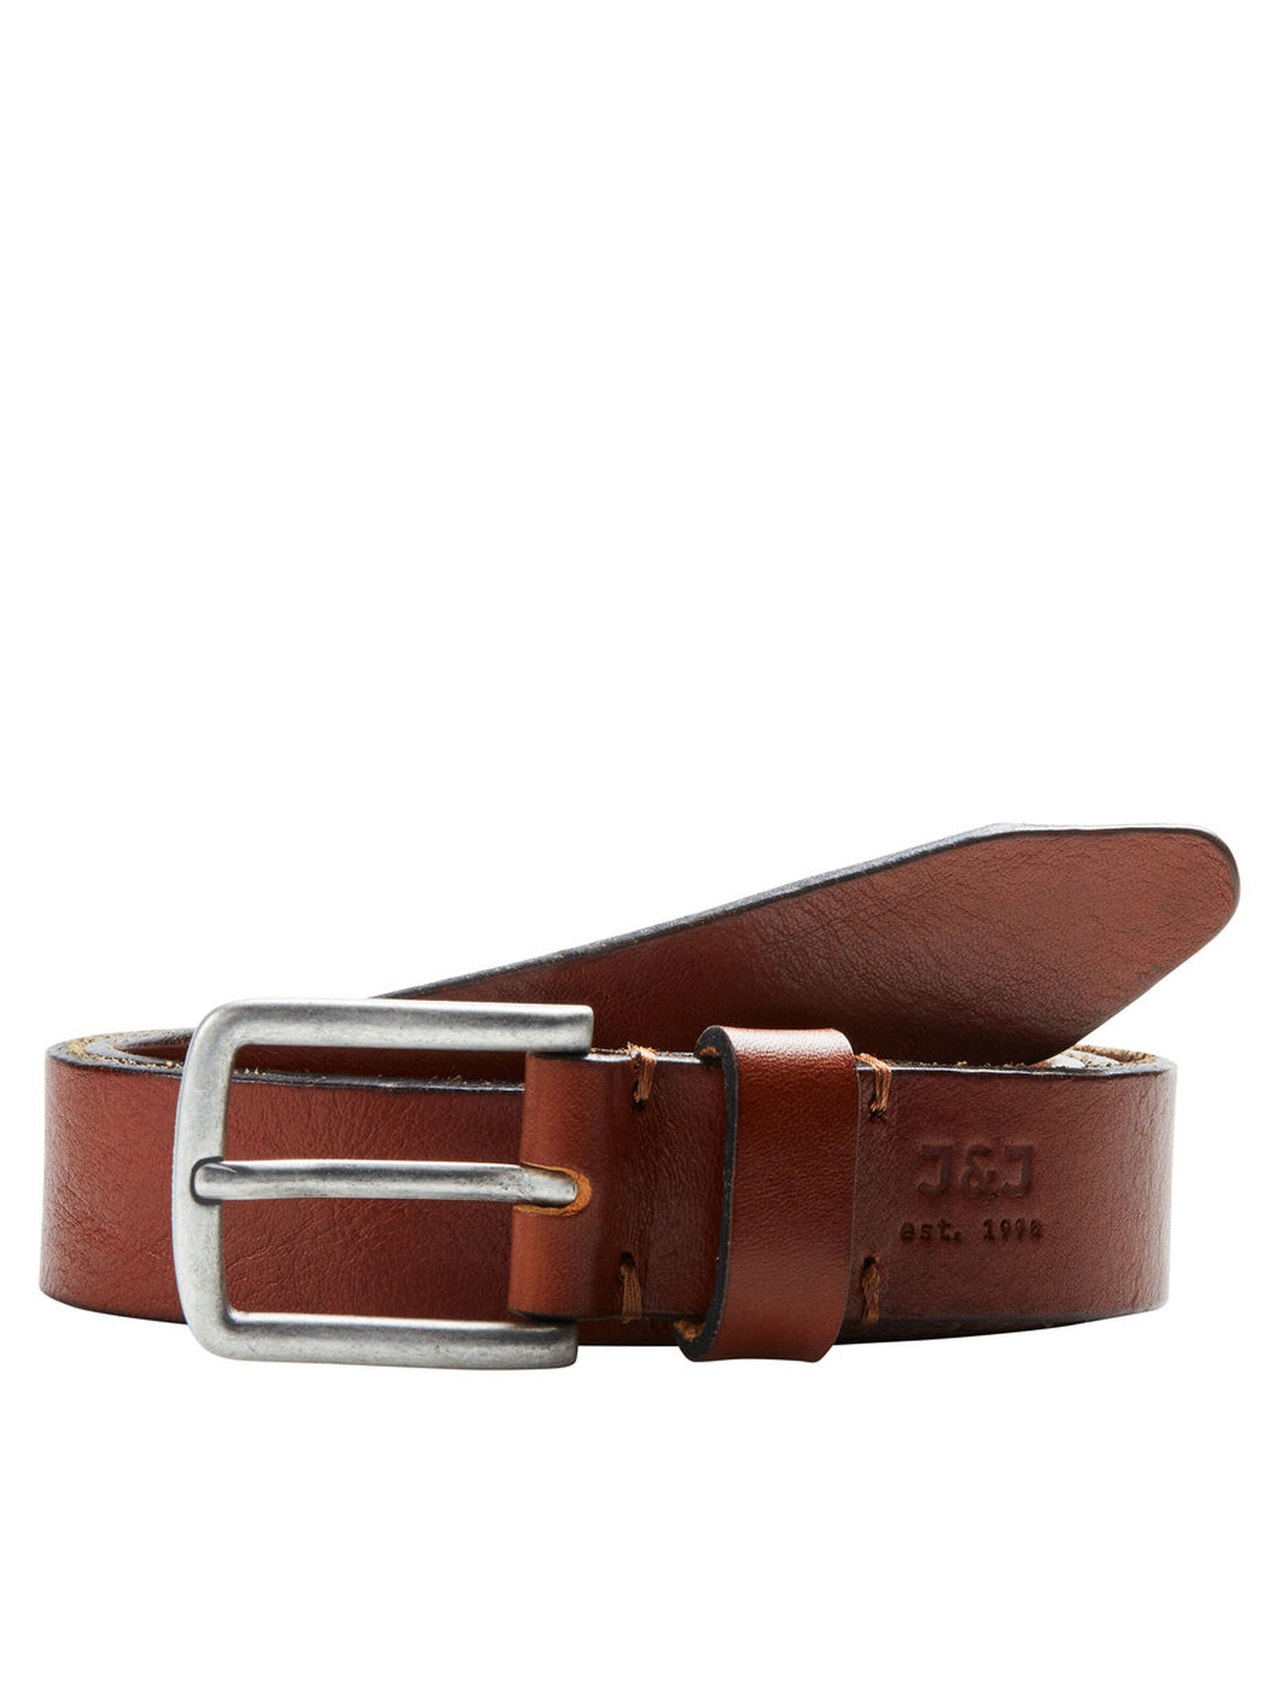 Jack & Jones Leather Belt -Mocha Bisque - 12111066